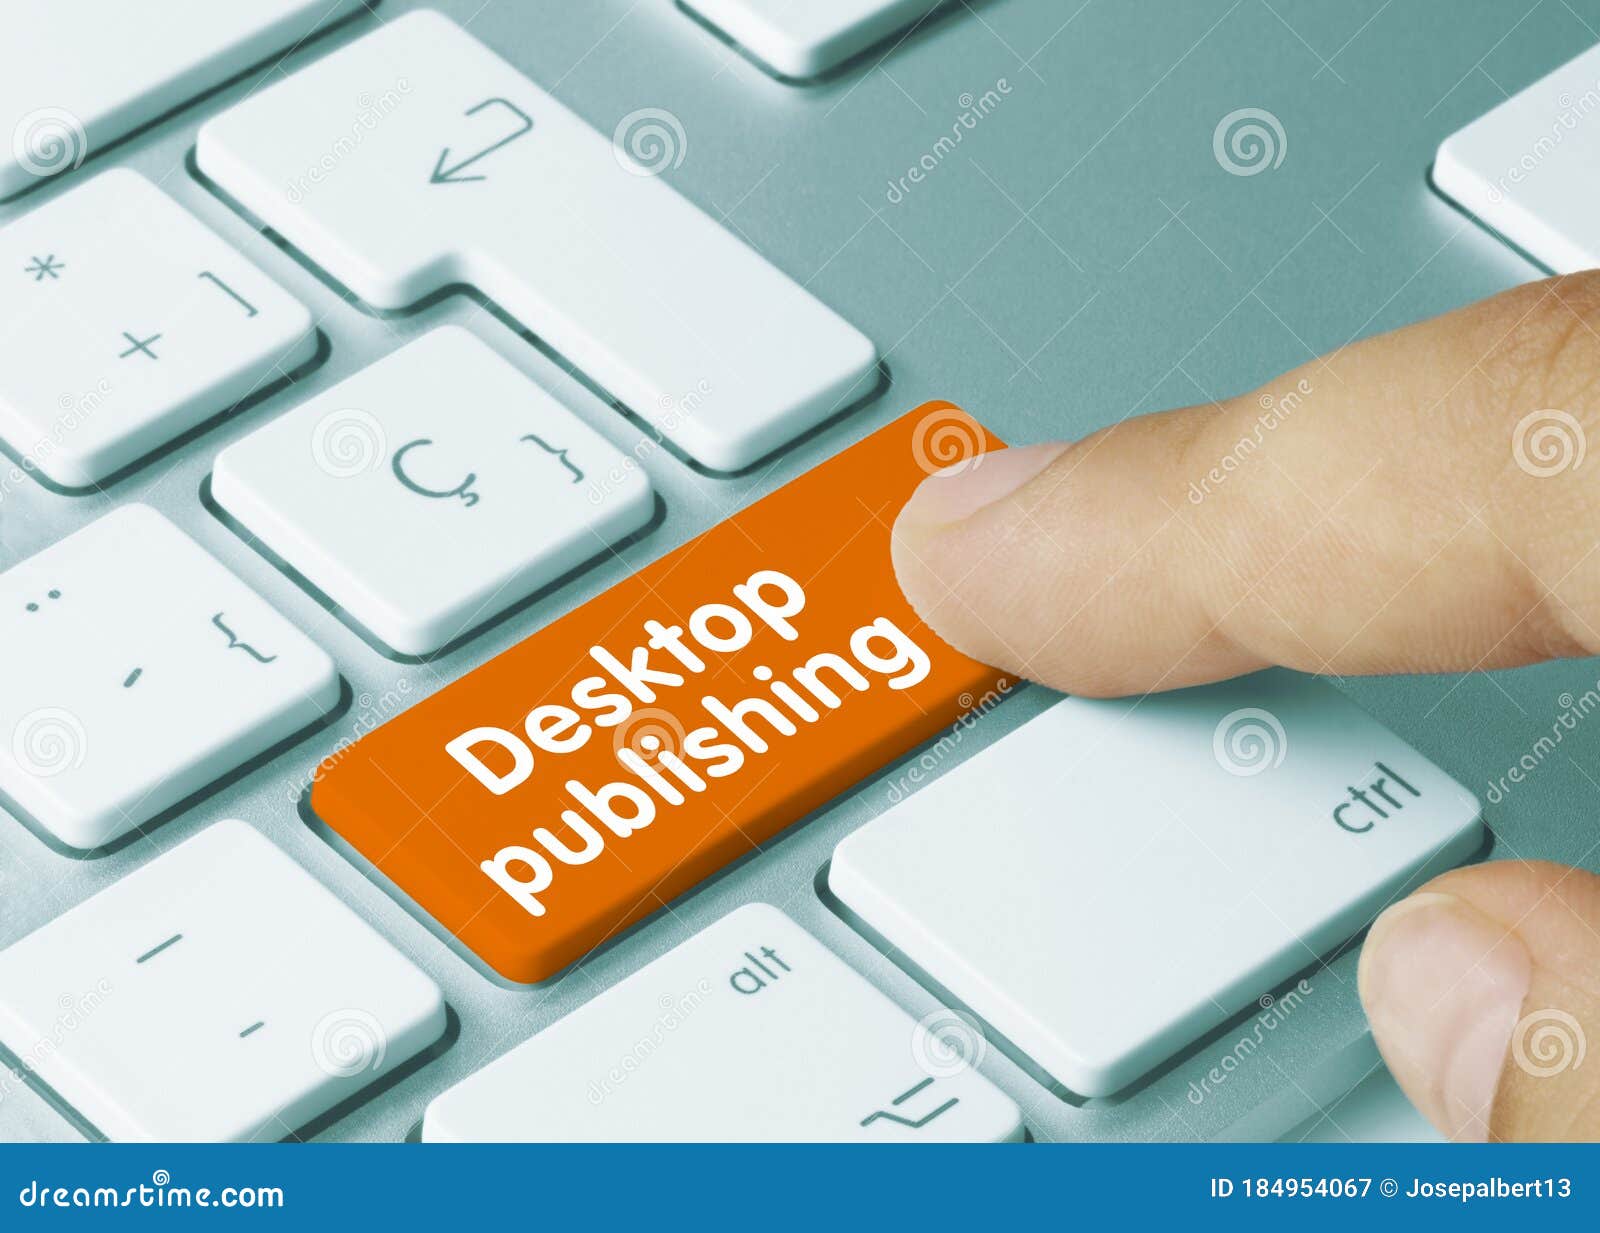 desktop publishing - inscription on orange keyboard key